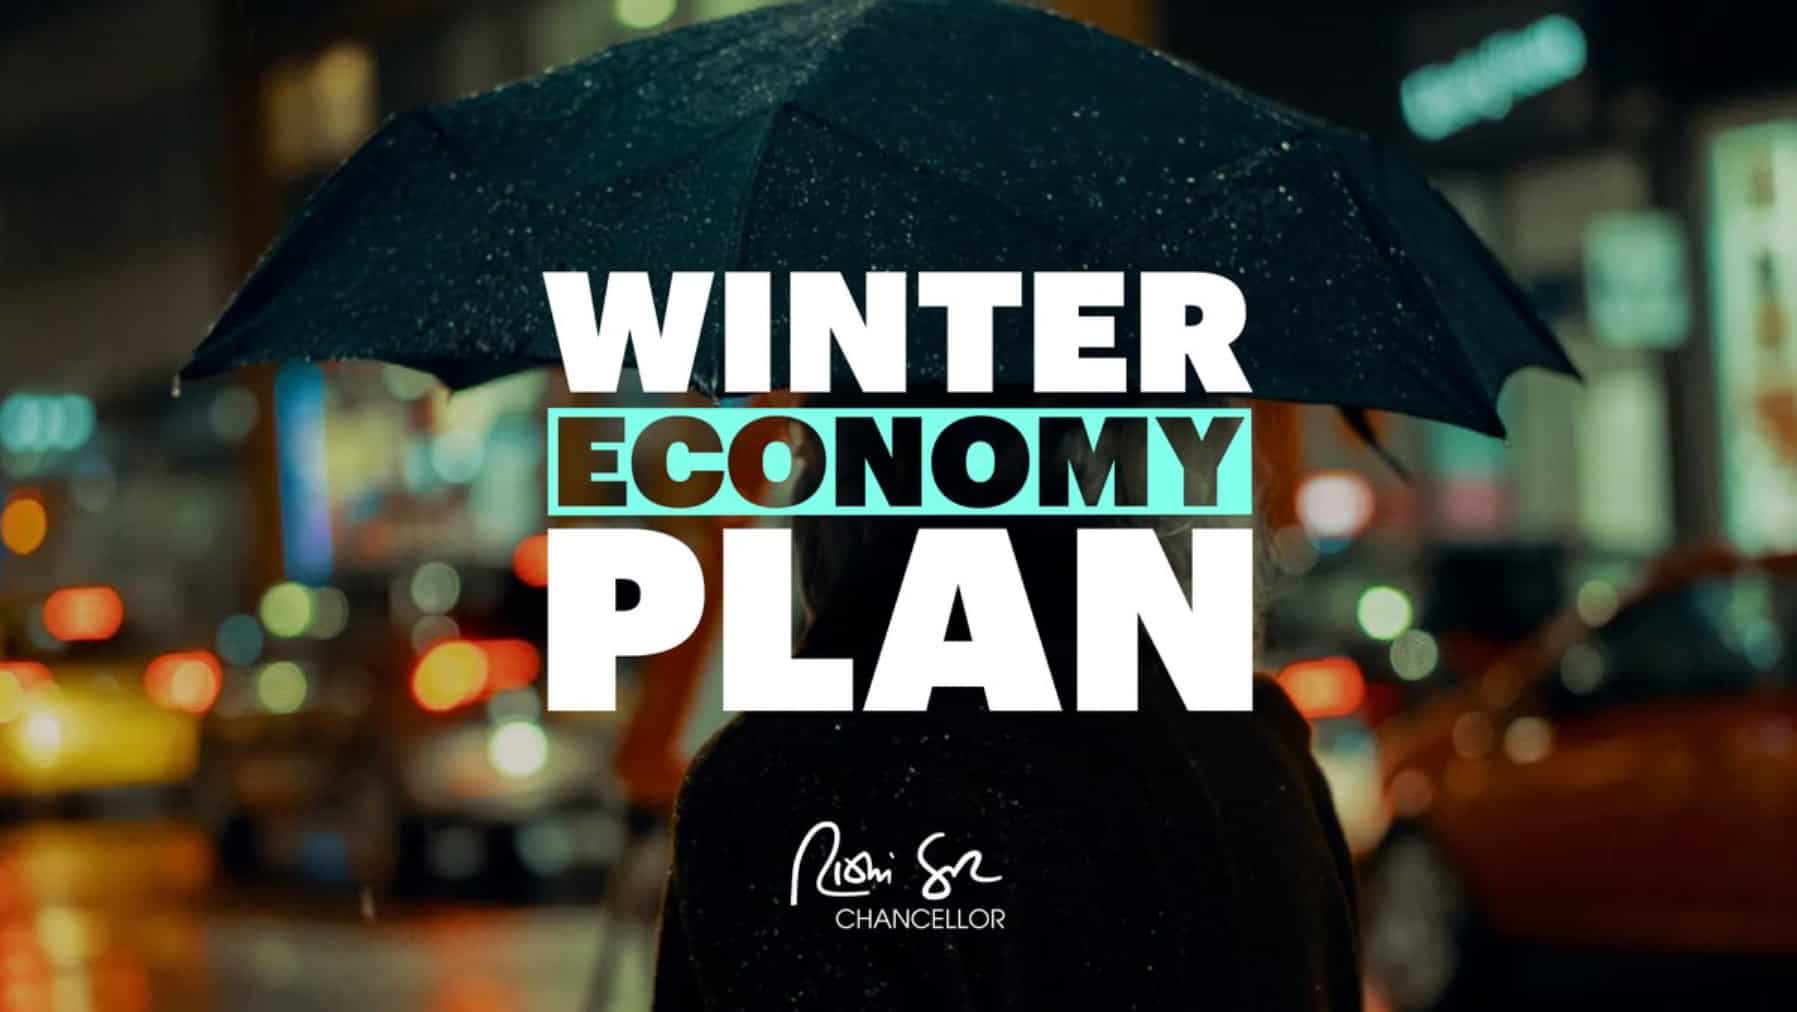 winter economy plan